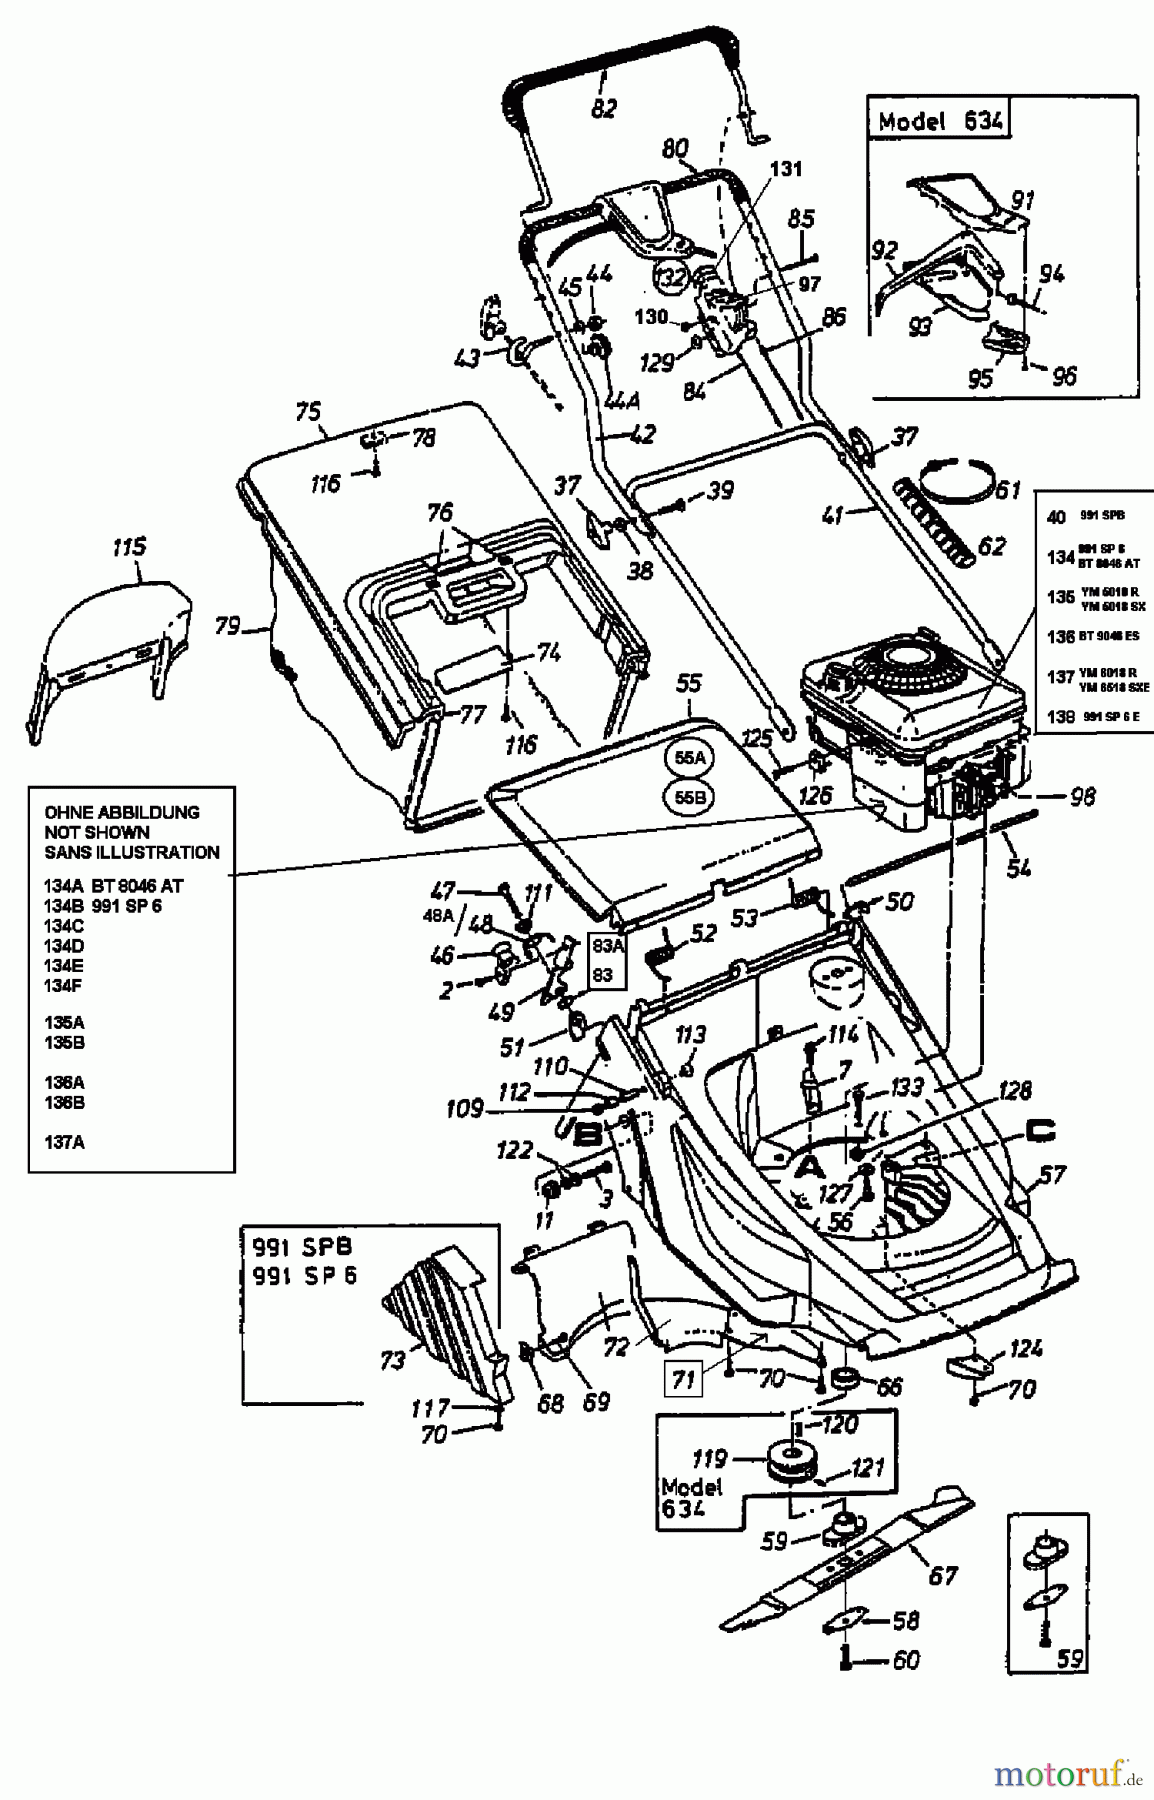  Bricobi Motormäher mit Antrieb BT 8046 AT 12A-648N601  (1999) Grundgerät